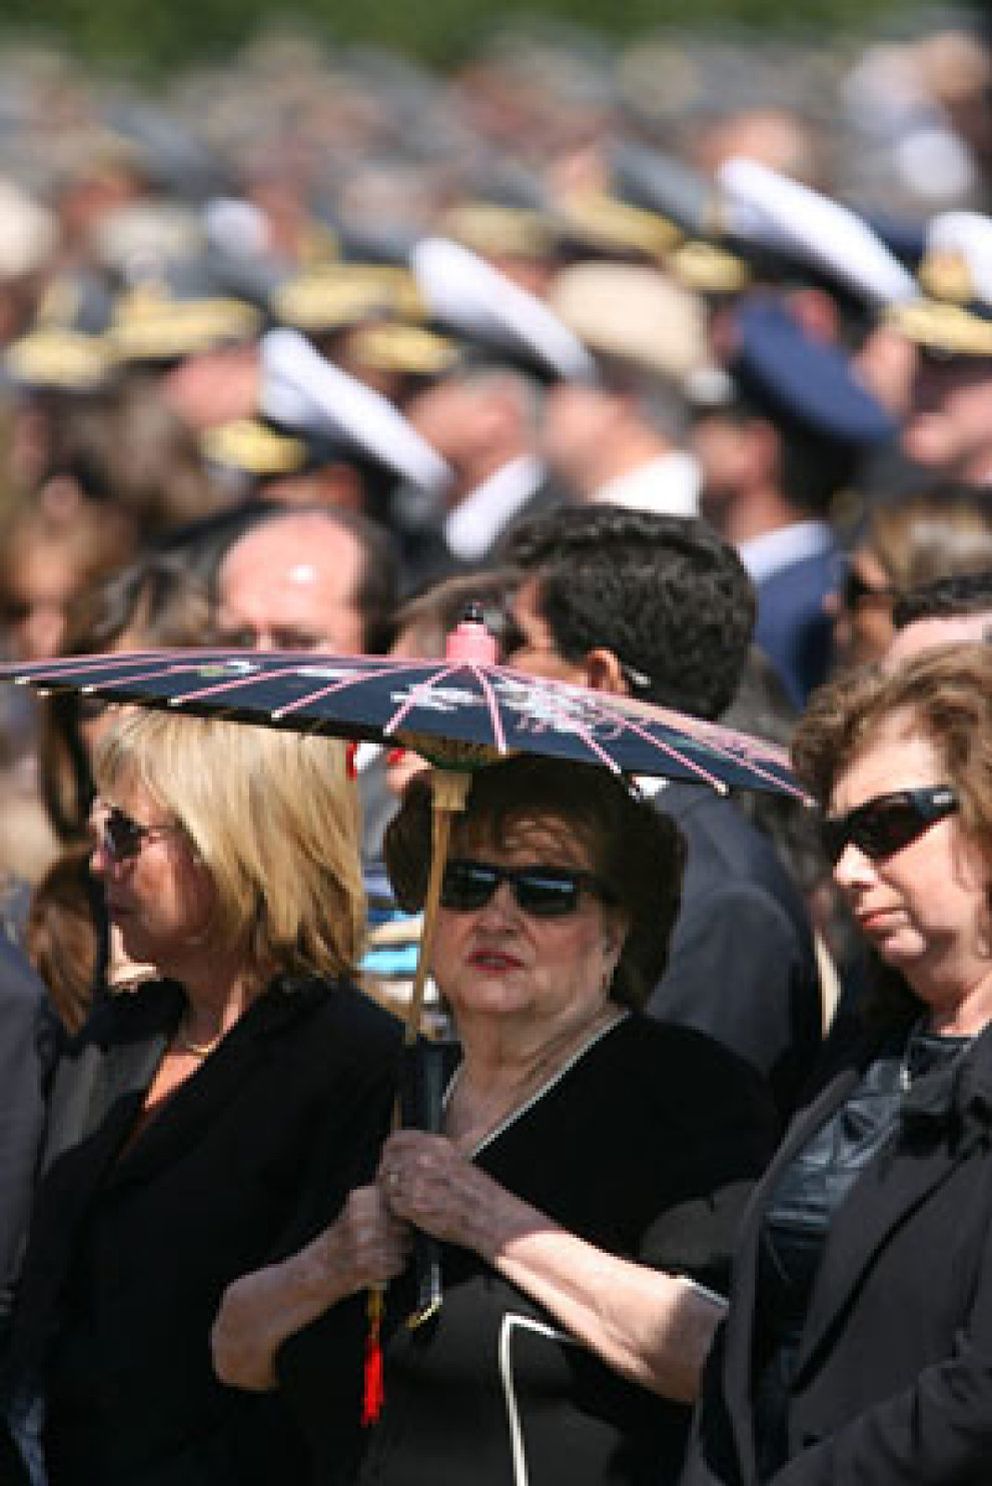 Foto: Despedida oficial de Pinochet mientras en la calle se recuerda a las víctimas